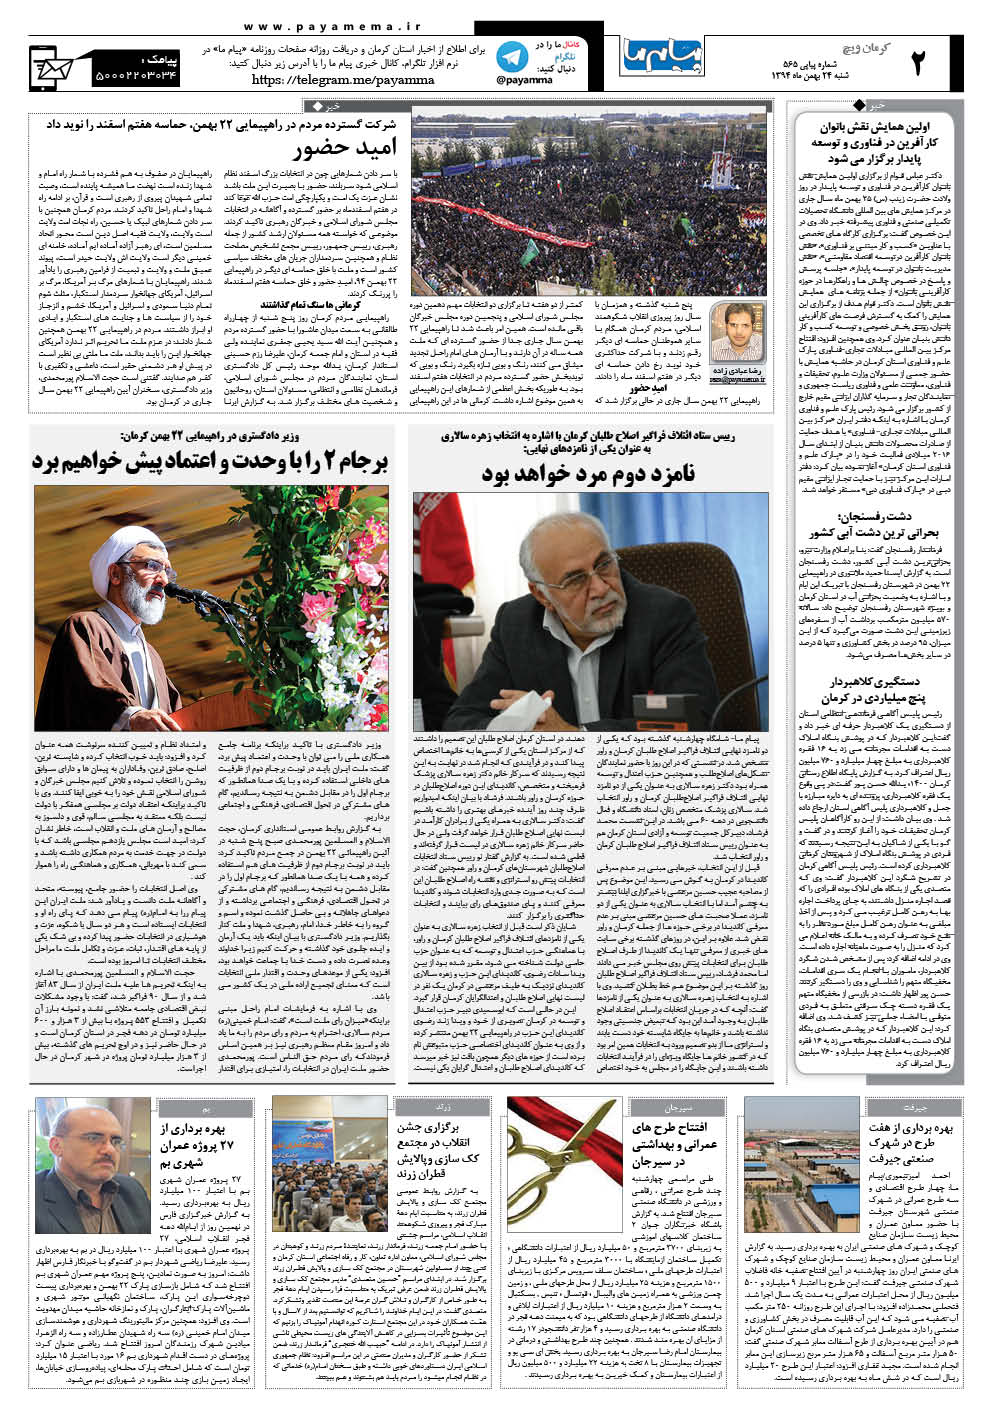 صفحه کرمان ویج شماره 565 روزنامه پیام ما